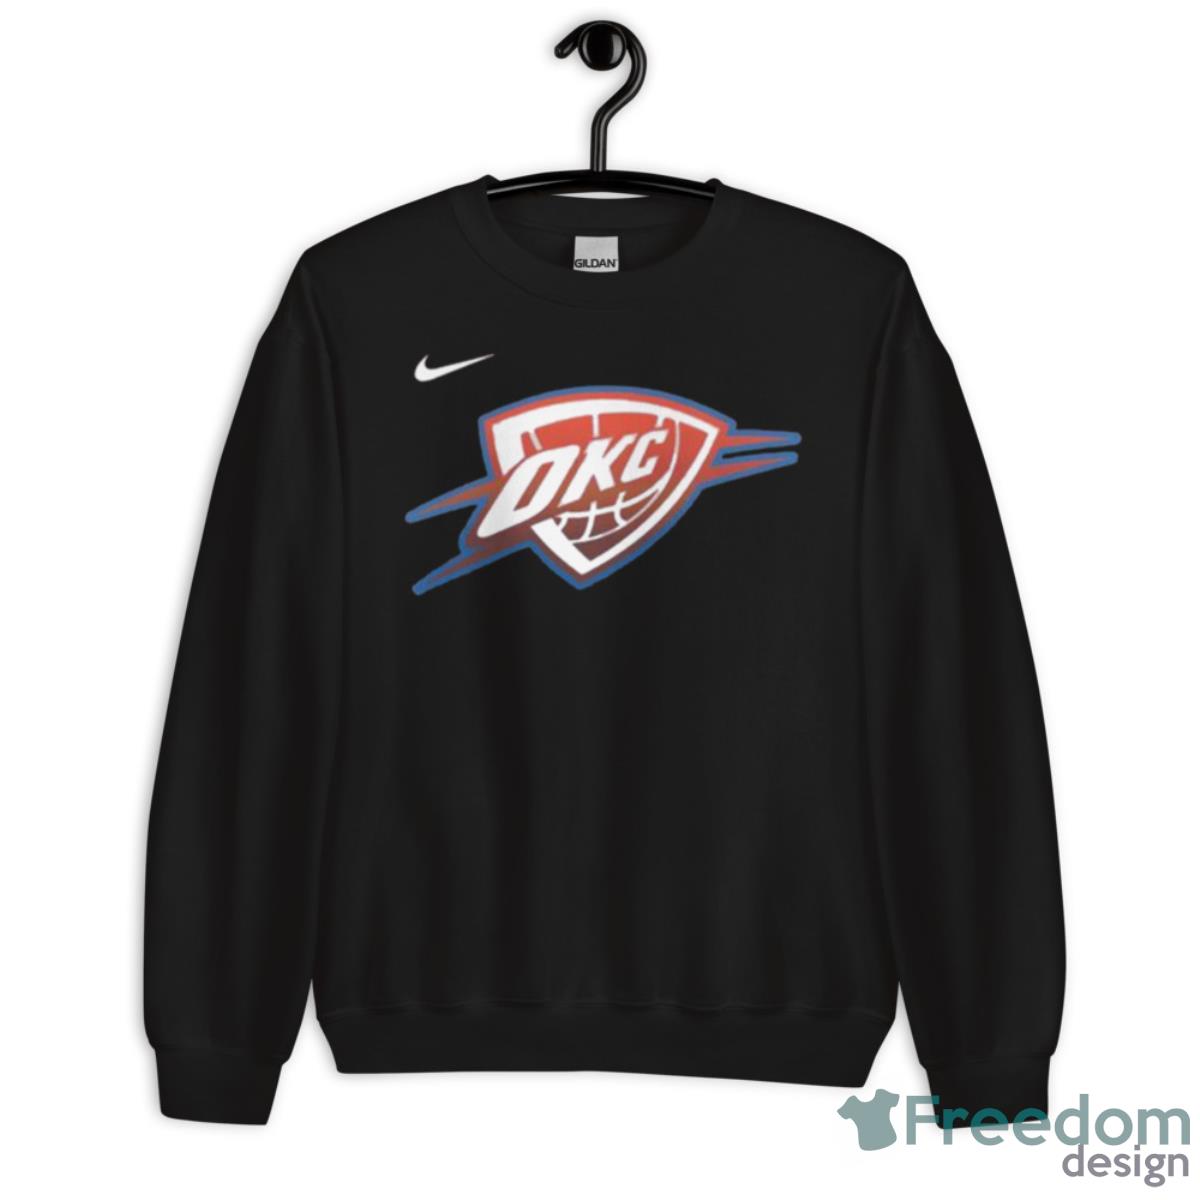 Oklahoma City 89ers | Essential T-Shirt